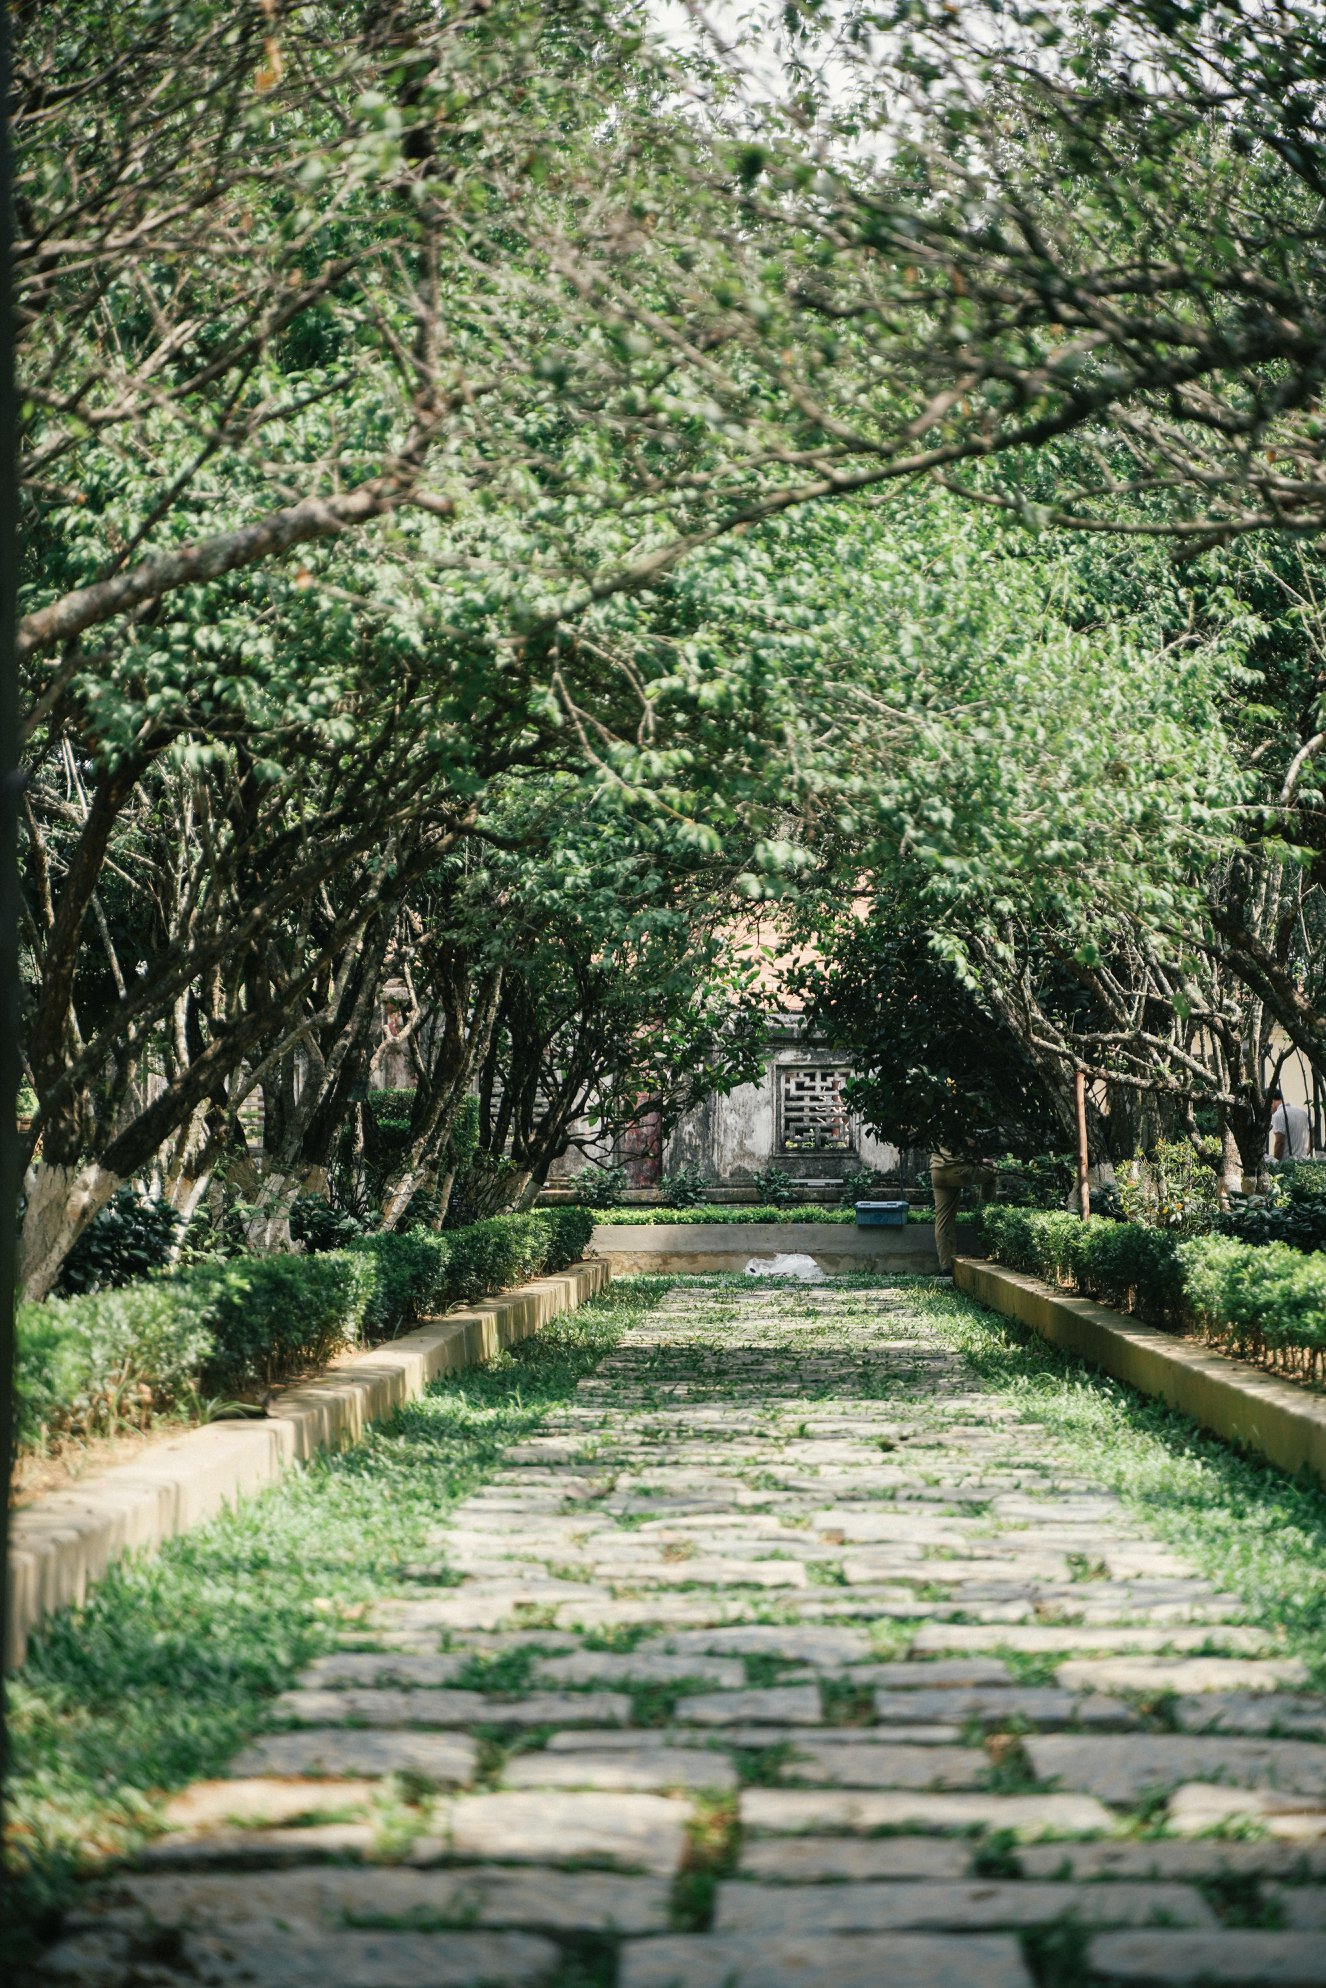 Lối dẫn vào rợp bóng cây ở nhà vườn An Hiên. Ảnh : Nguyen Thanh Luan.